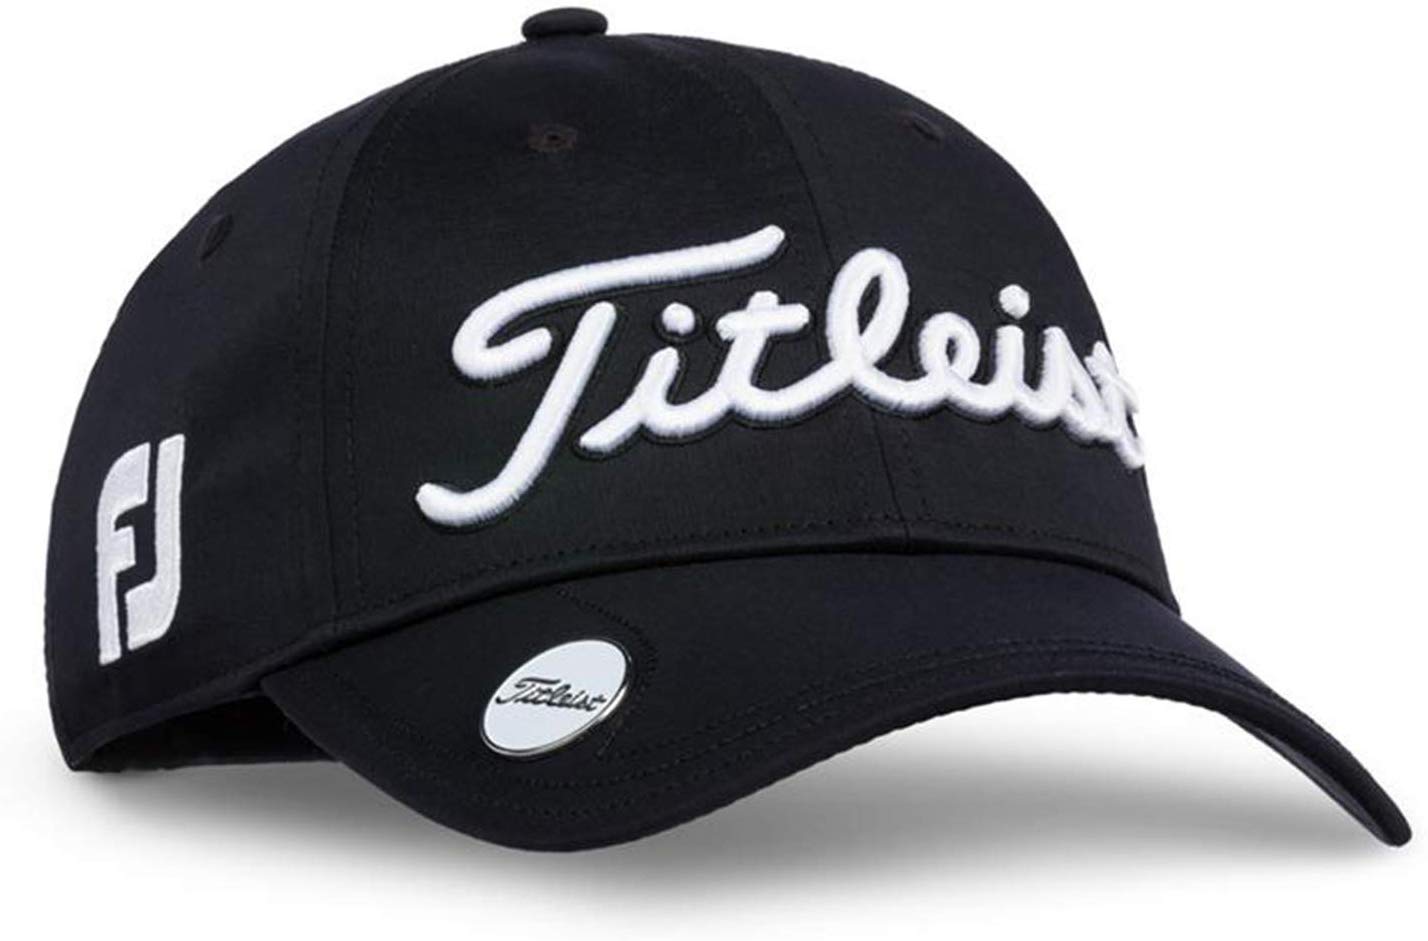 Womens Titleist Tour Performance Golf Hats